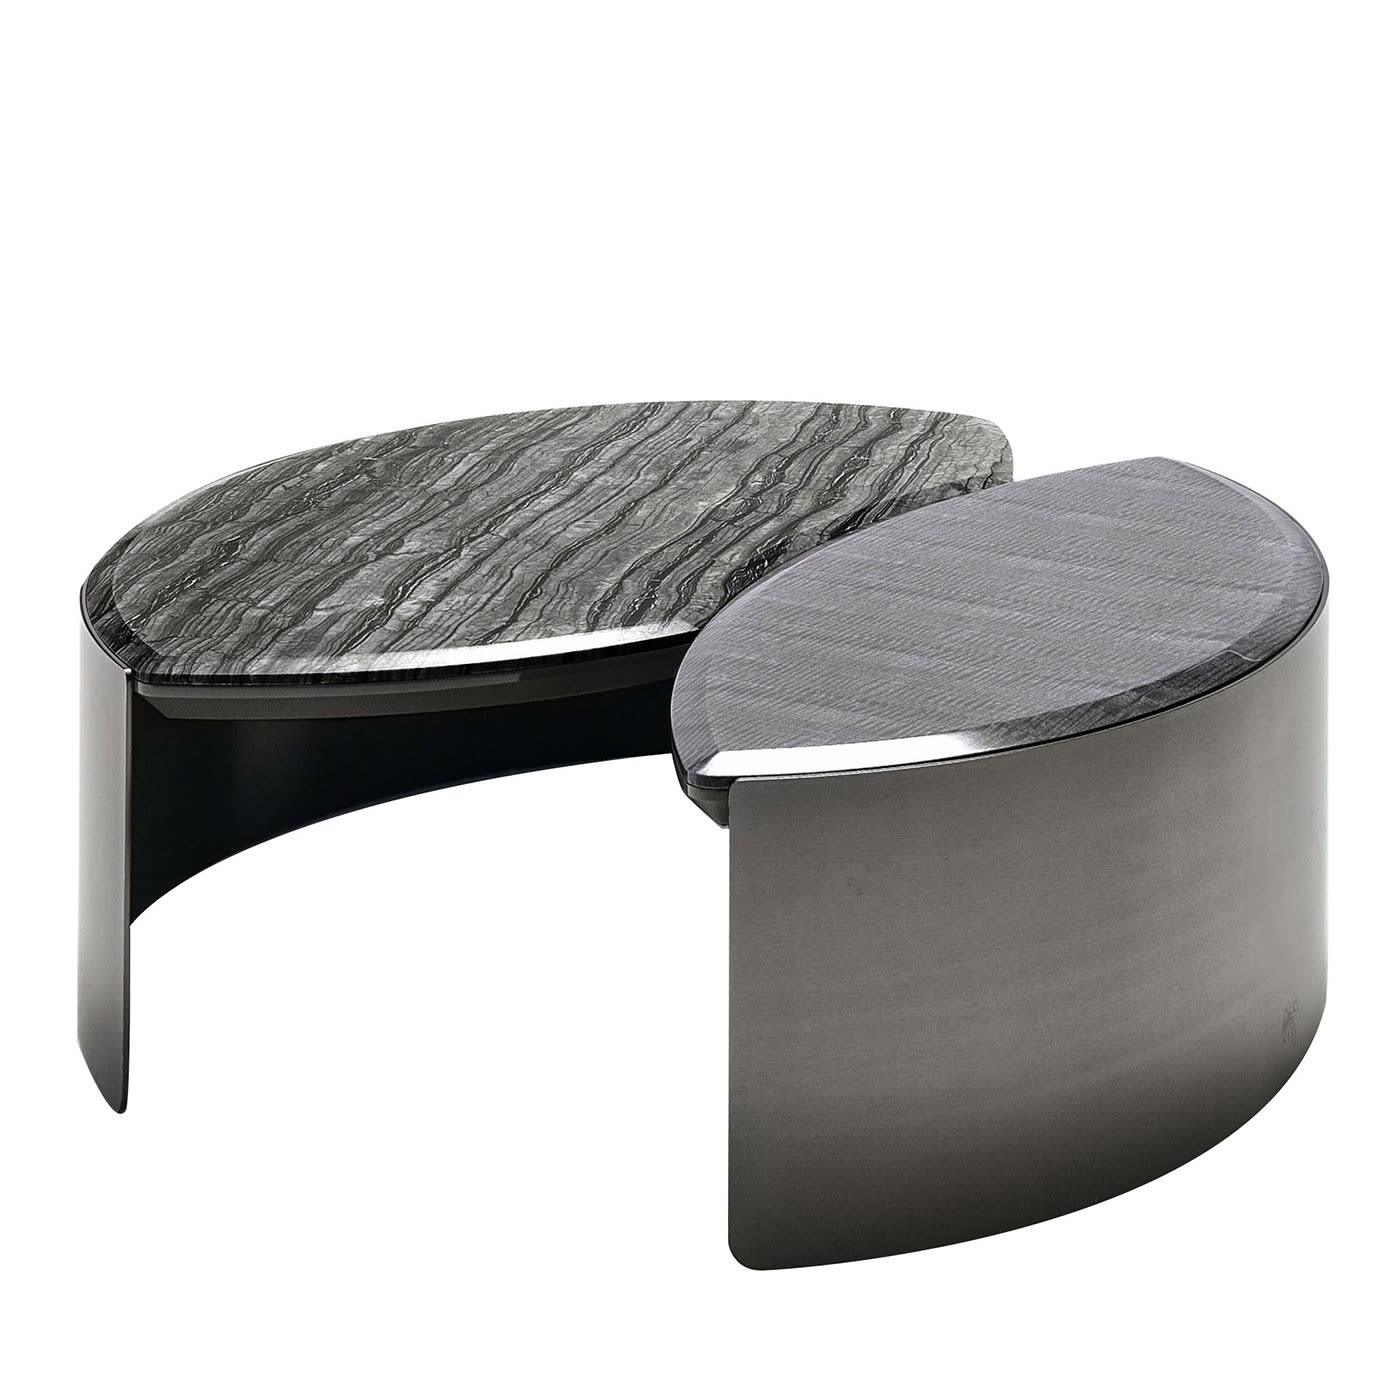 Mirage Circular Coffee Table - Giorgio Collection